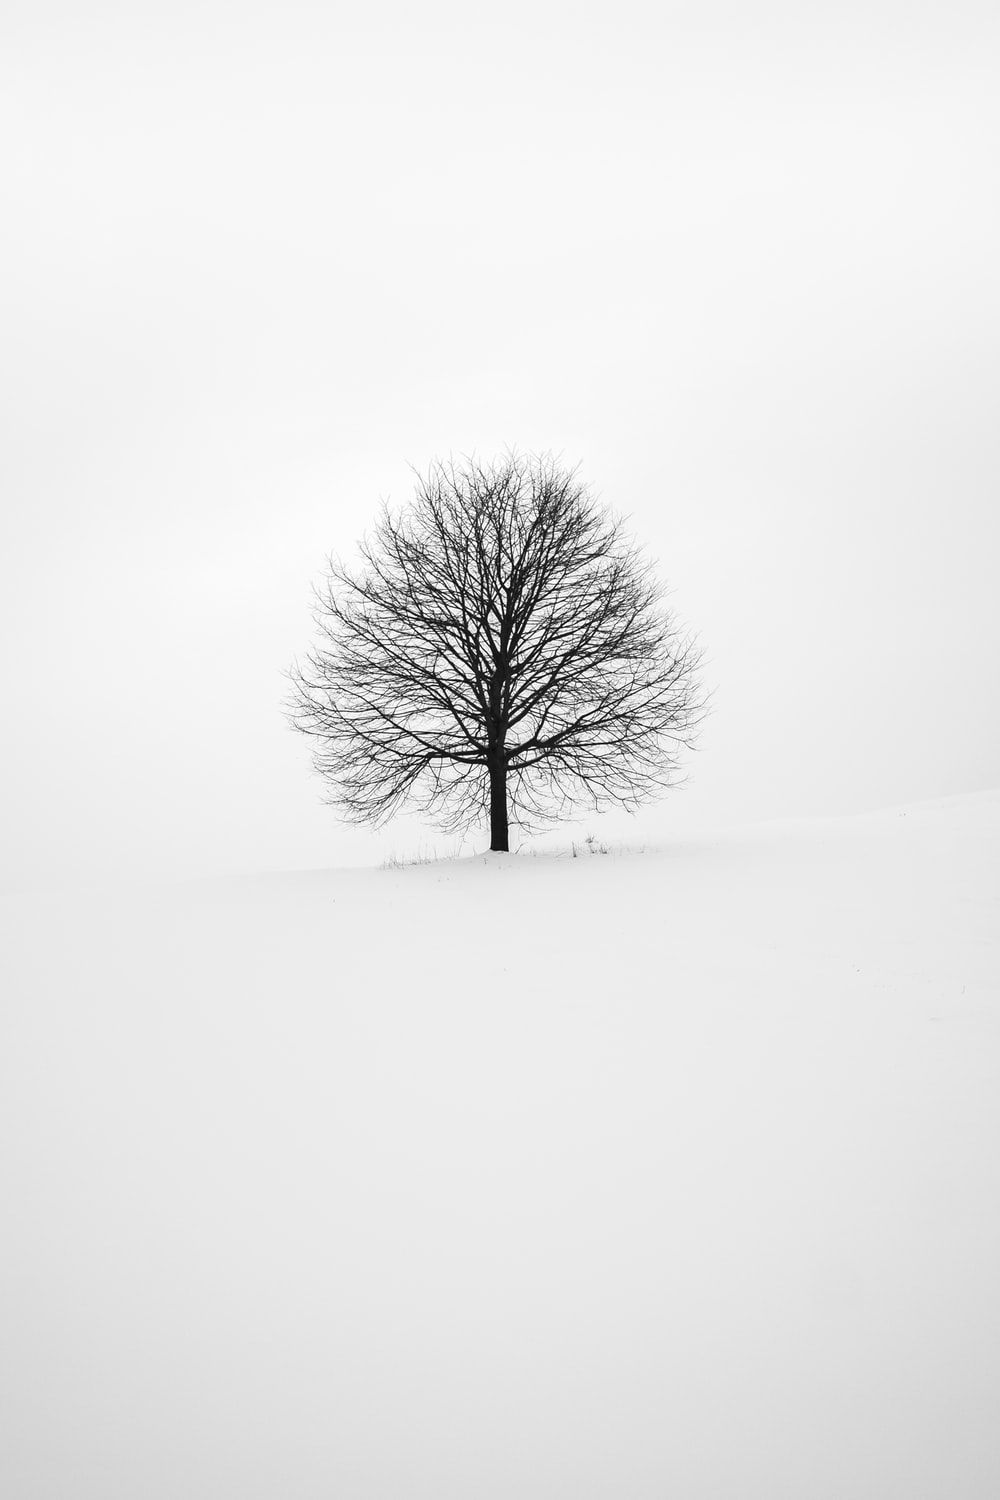 Mejores 100+ fotos en blanco y negro [HD] | Descargar imágenes gratis en